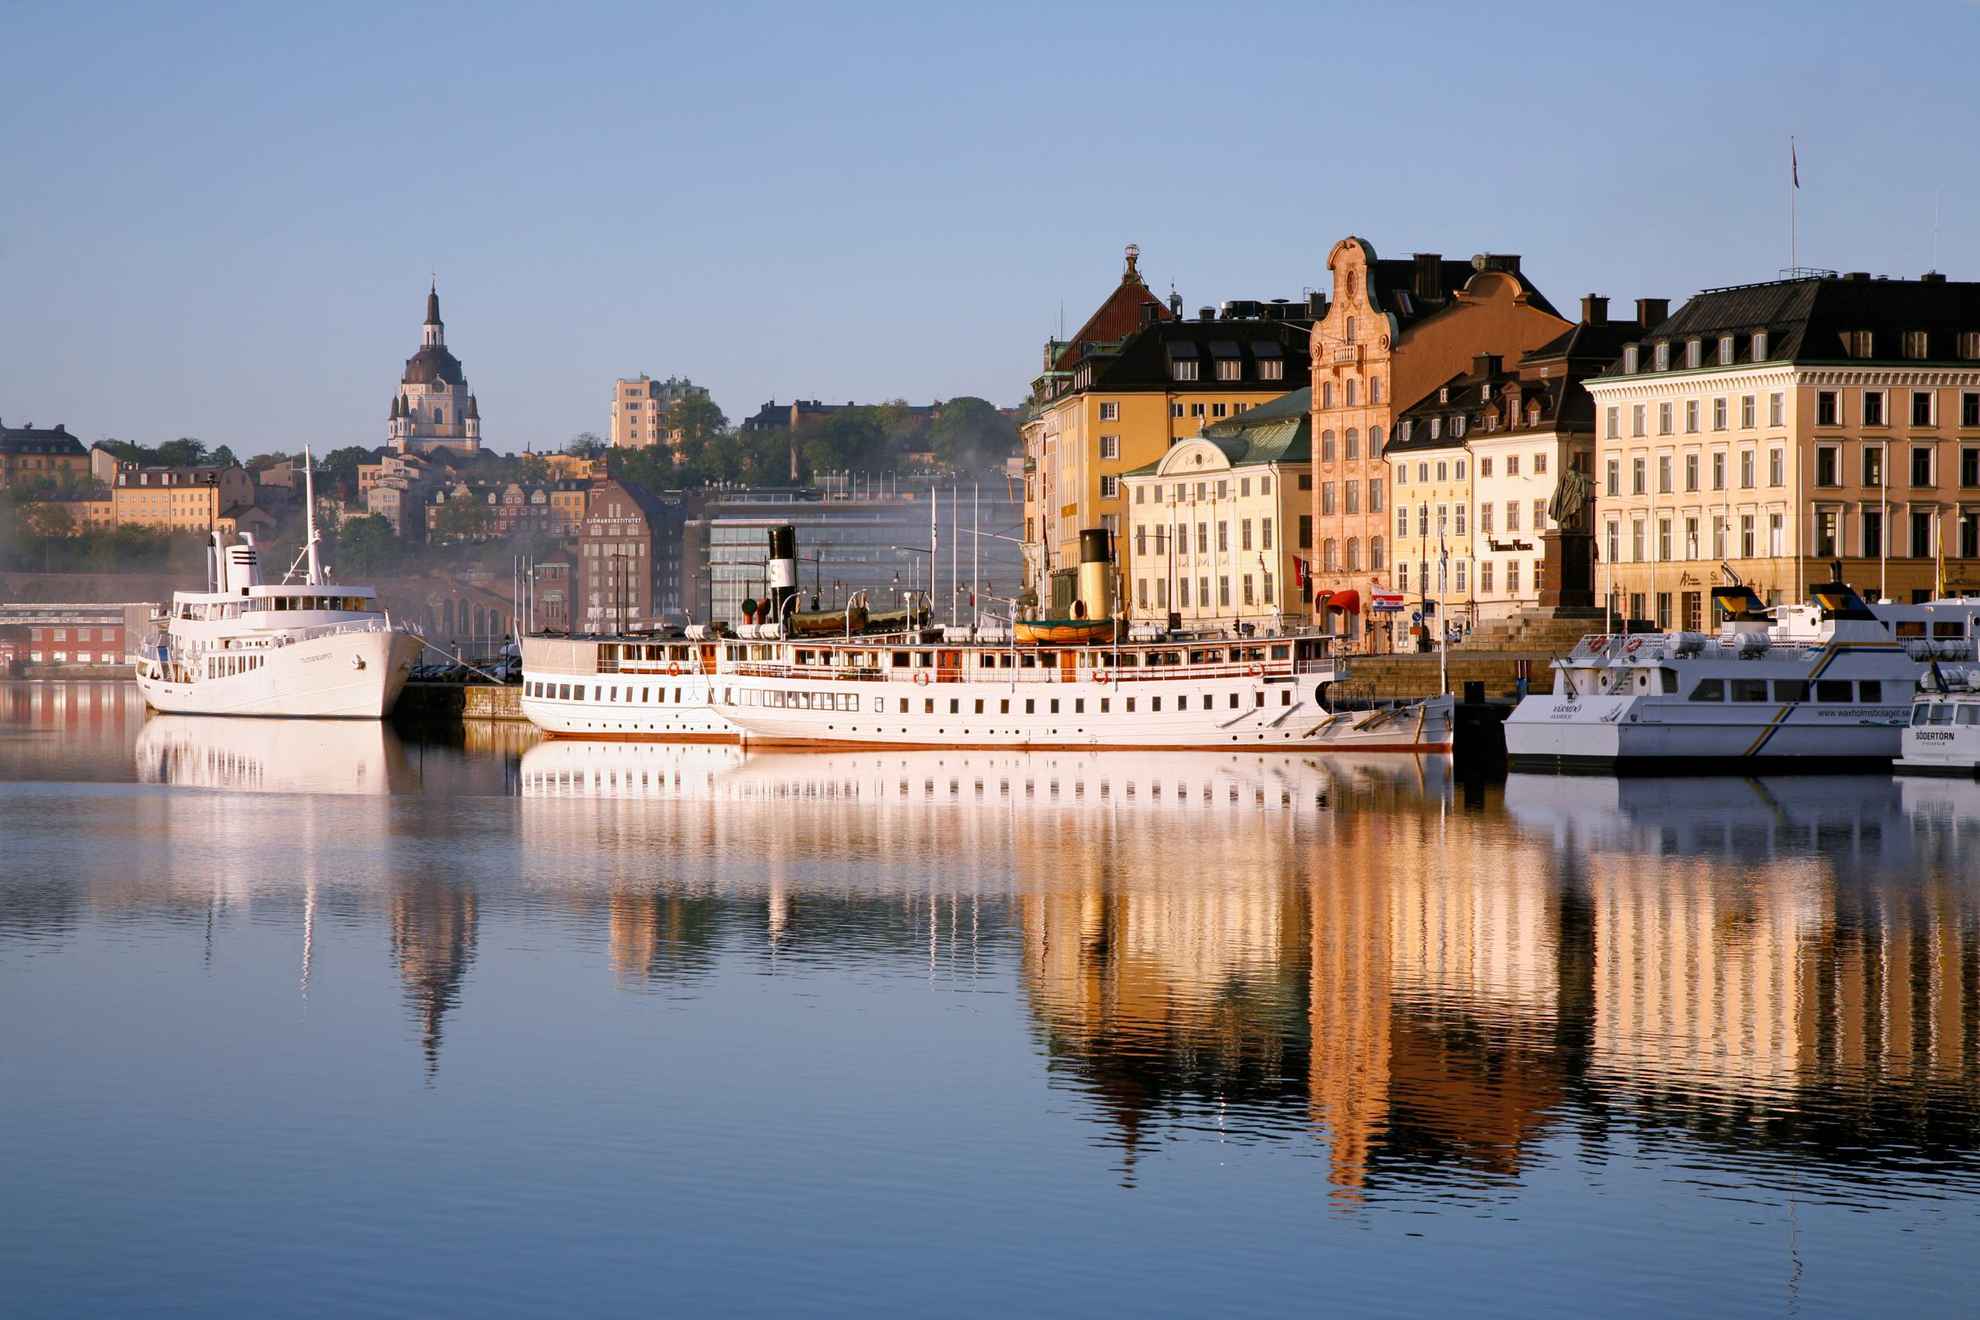 Zicht op de oude stad van Stockholm. Voor het eiland liggen boten aangemeerd.